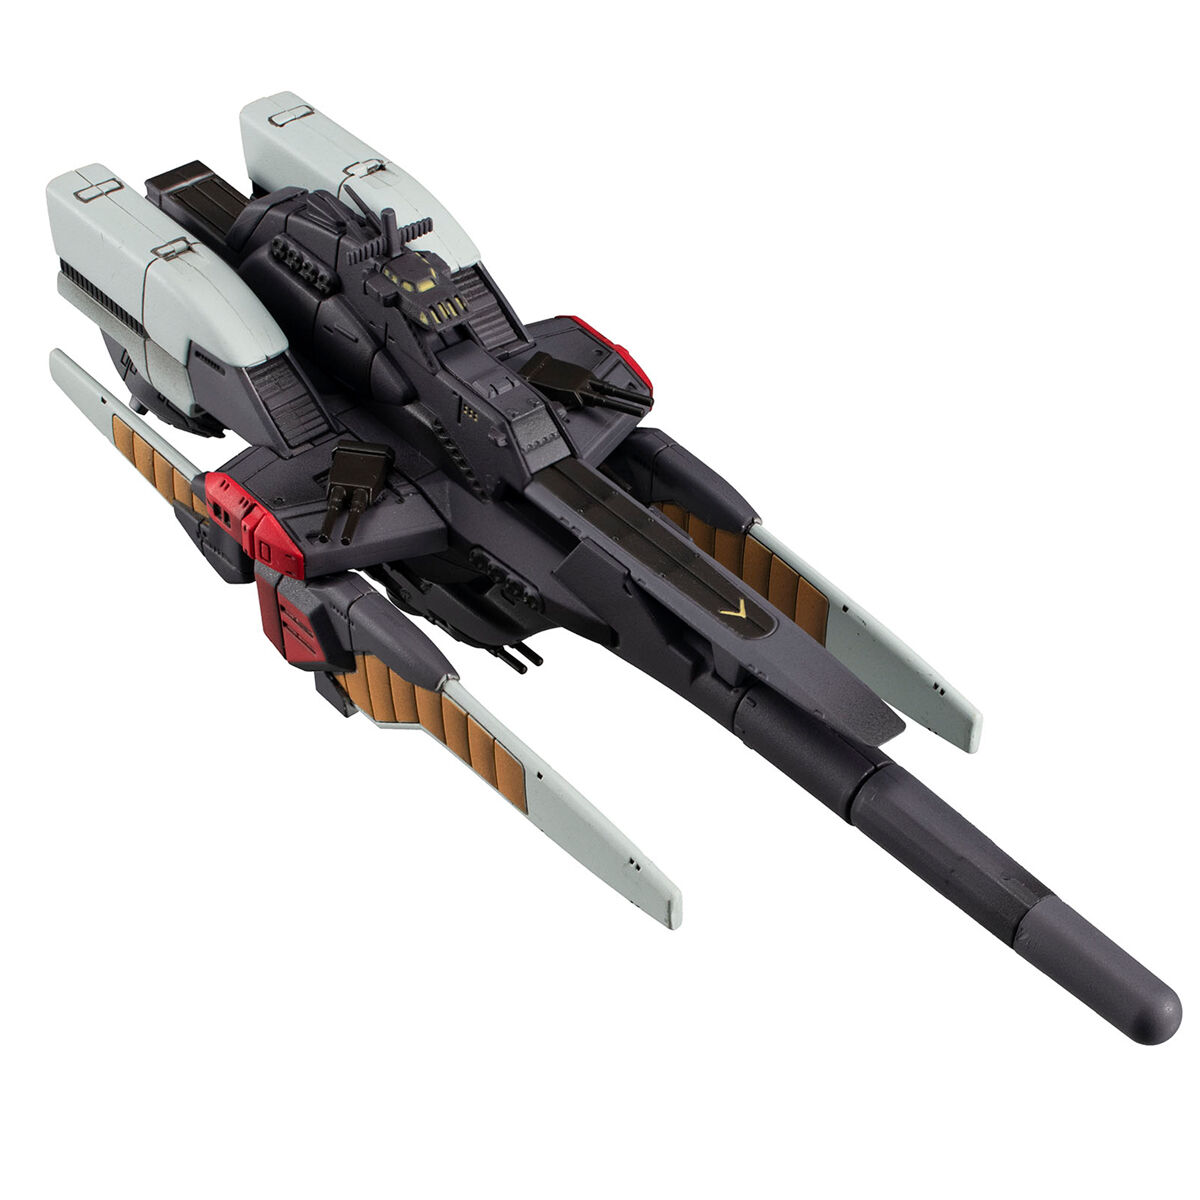 コスモフリートスペシャル『リーンホースJr.Re.』機動戦士Vガンダム 完成品モデル-008